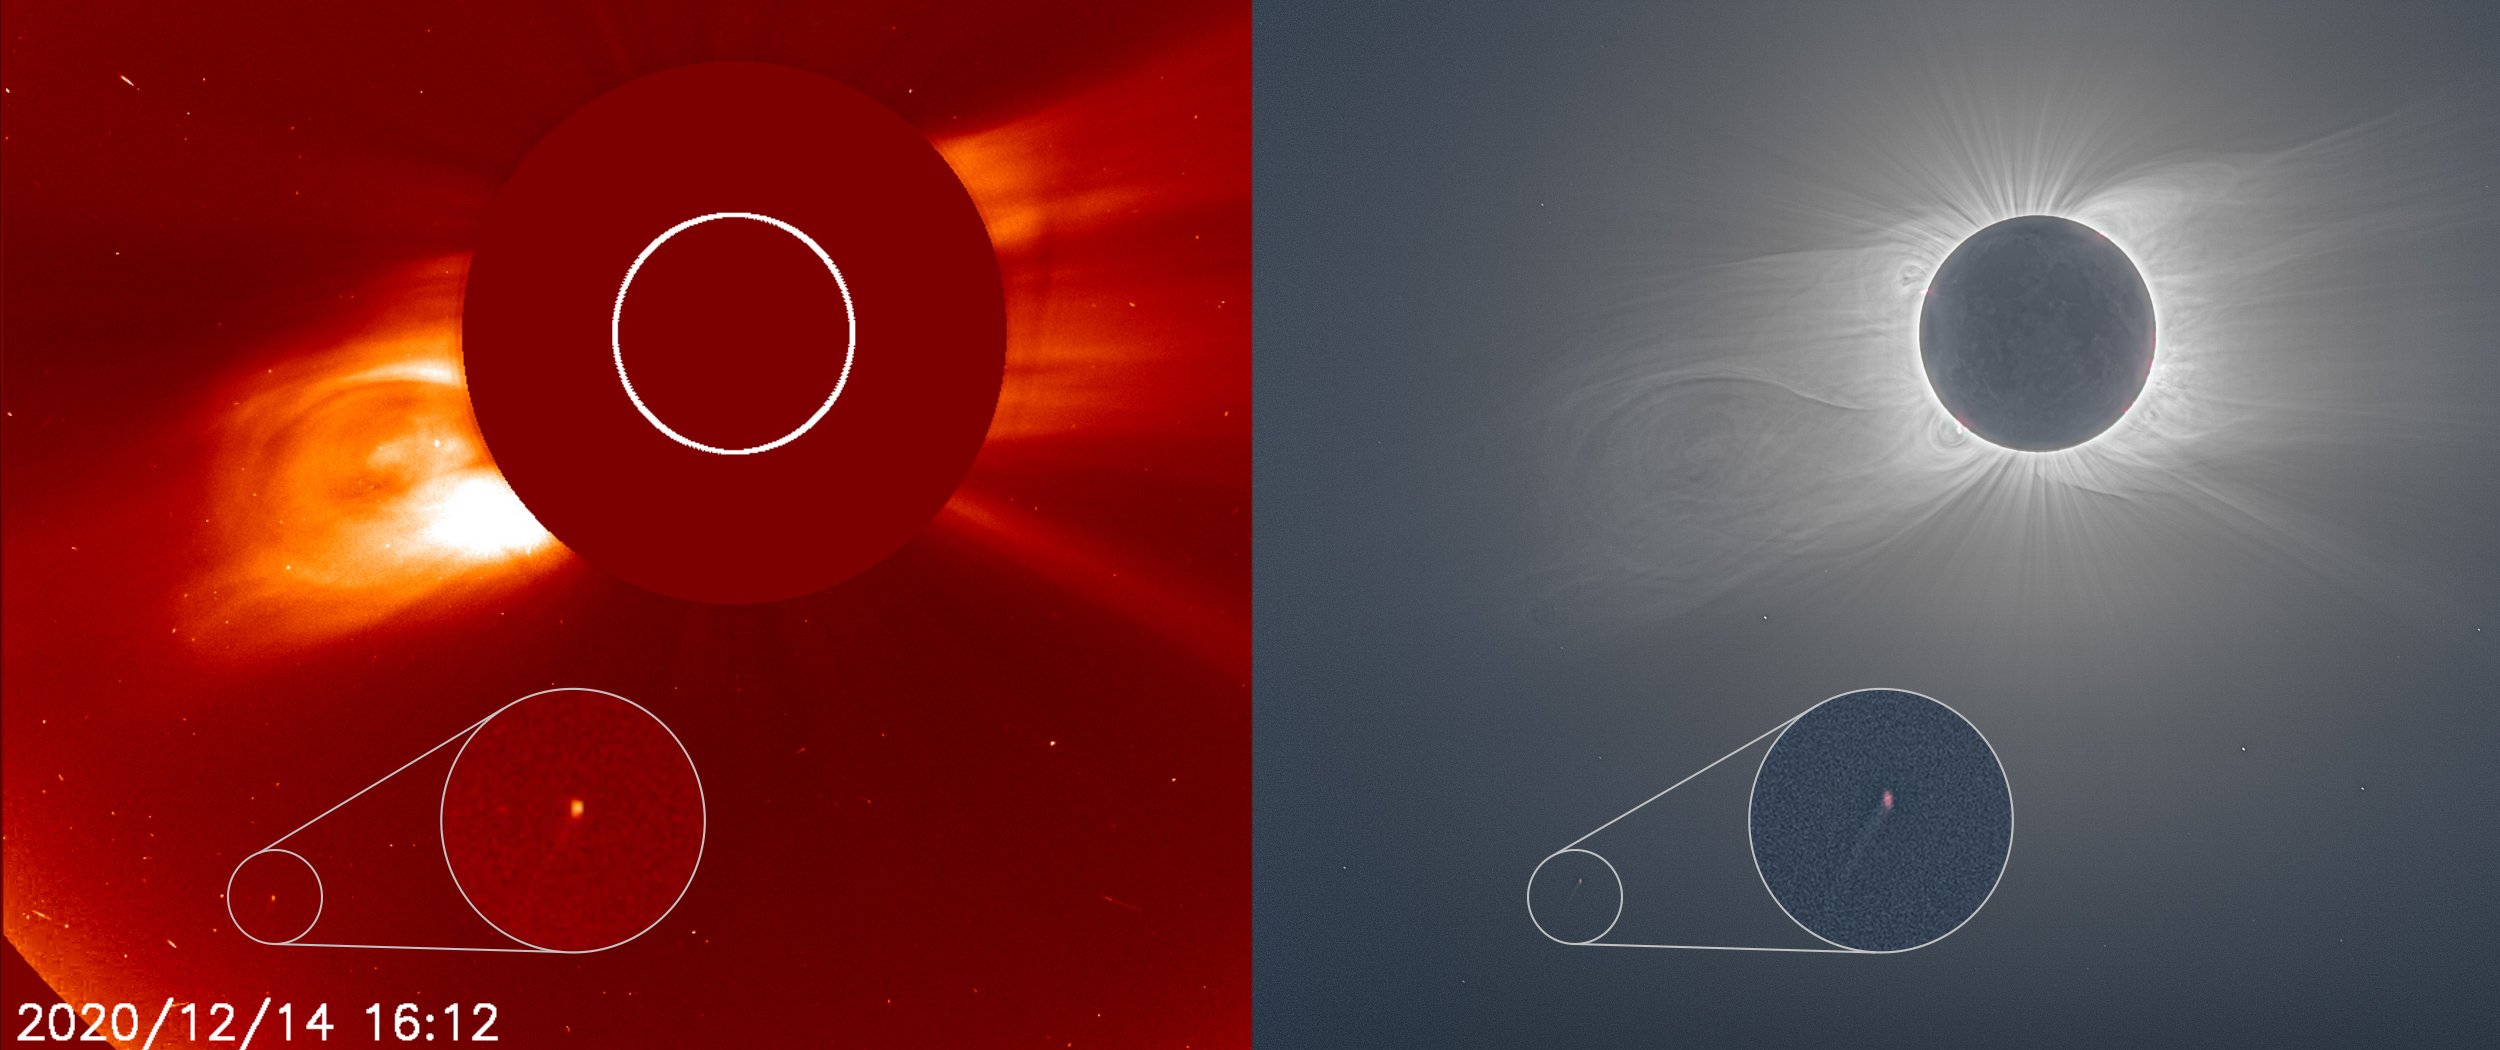 صورتان جنبًا إلى جنب تظهران مذنبًا قريبًا من الشمس، الصورة على اليمين تظهر هالة الشمس وهي تسطع بشكل ساطع خلال الكسوف الكلي للشمس.